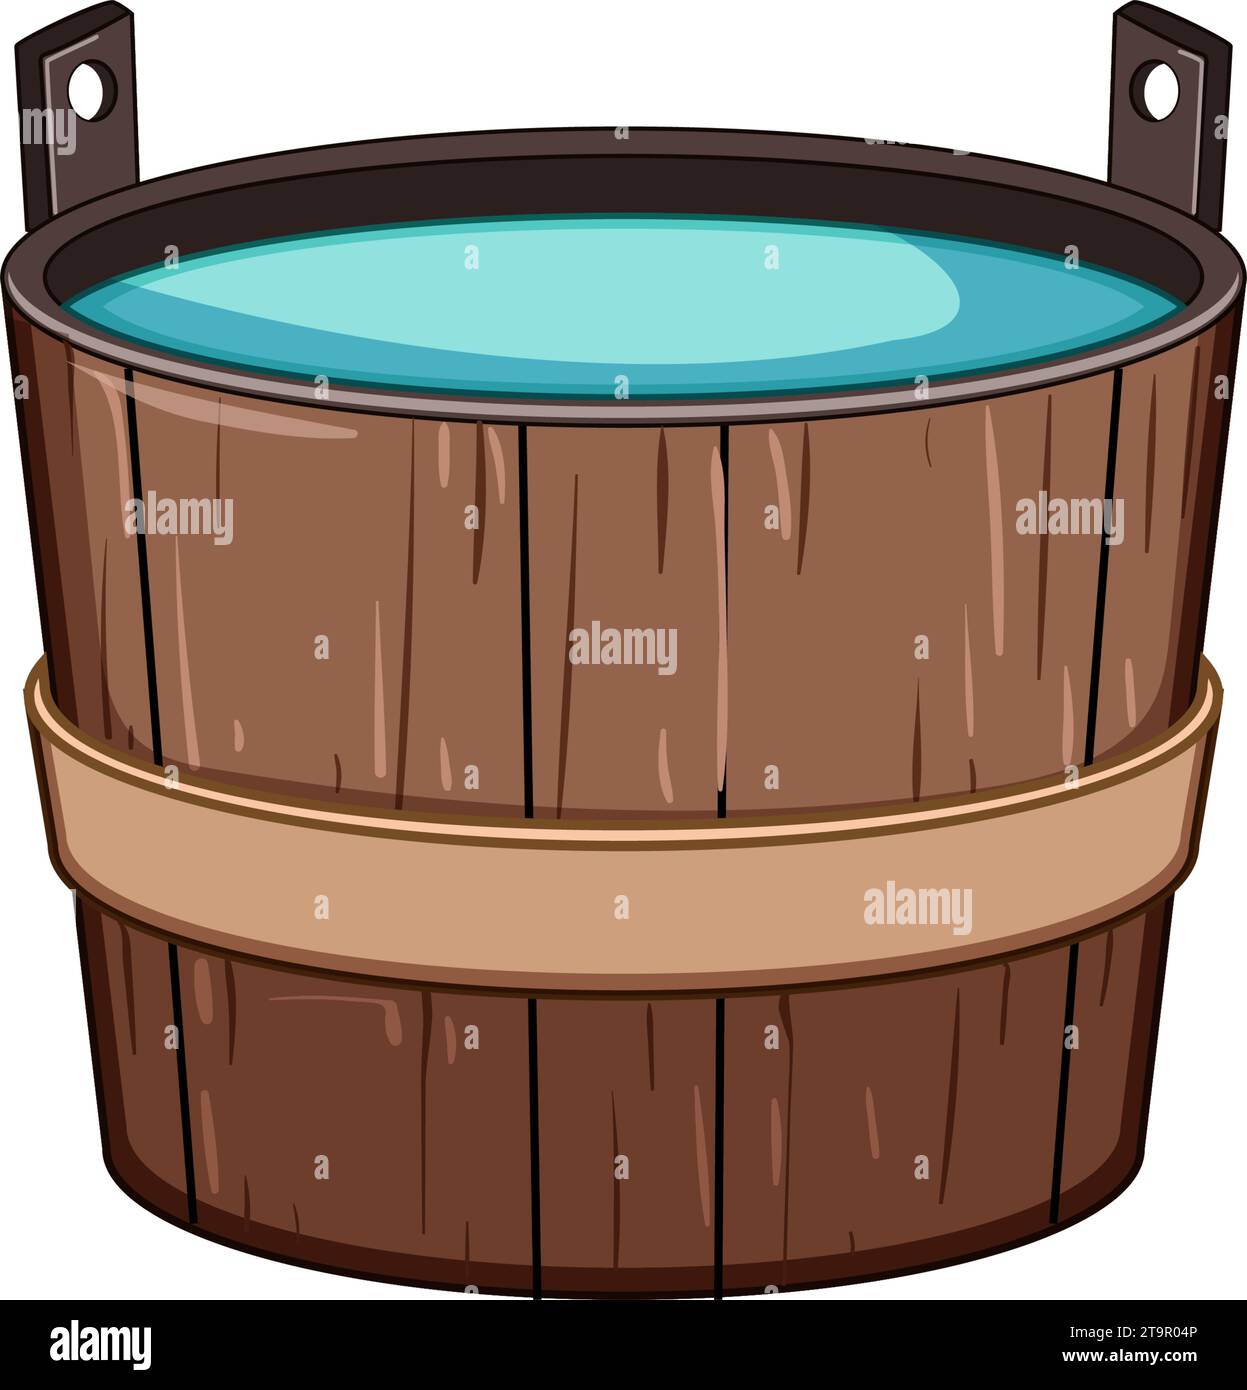 hot wooden tub cartoon vector illustration Stock Vector